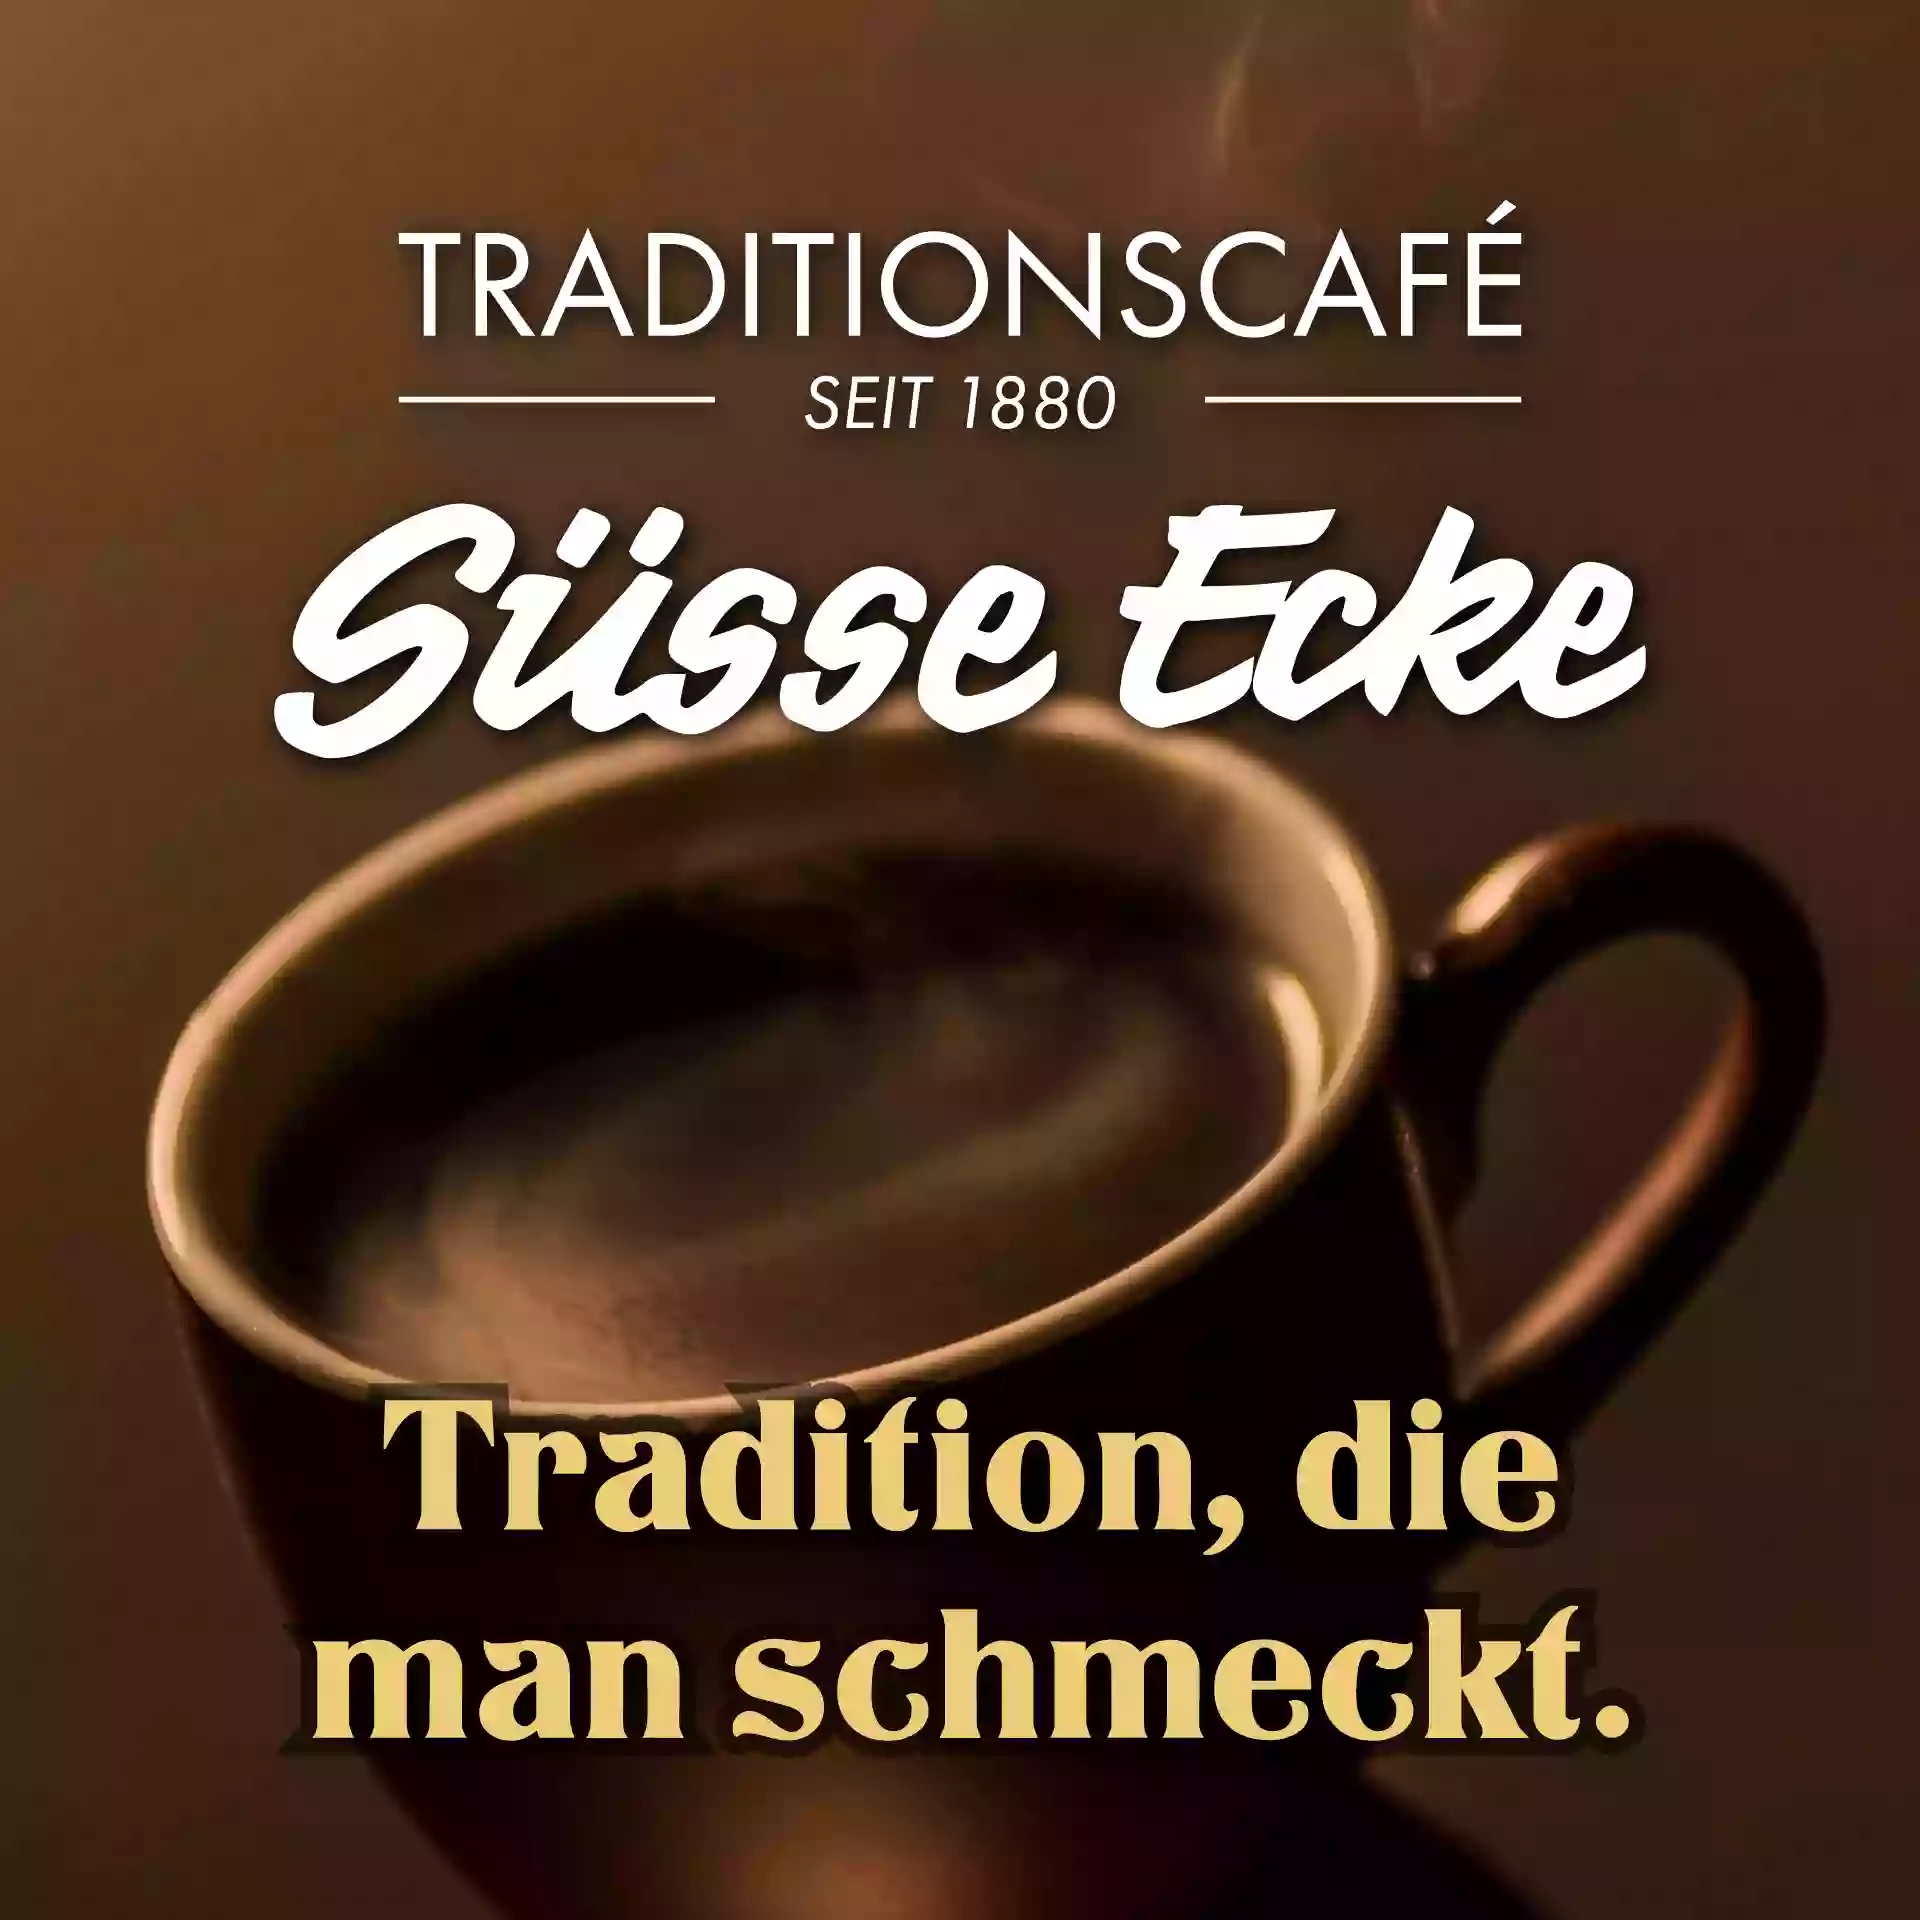 Café Süsse Ecke